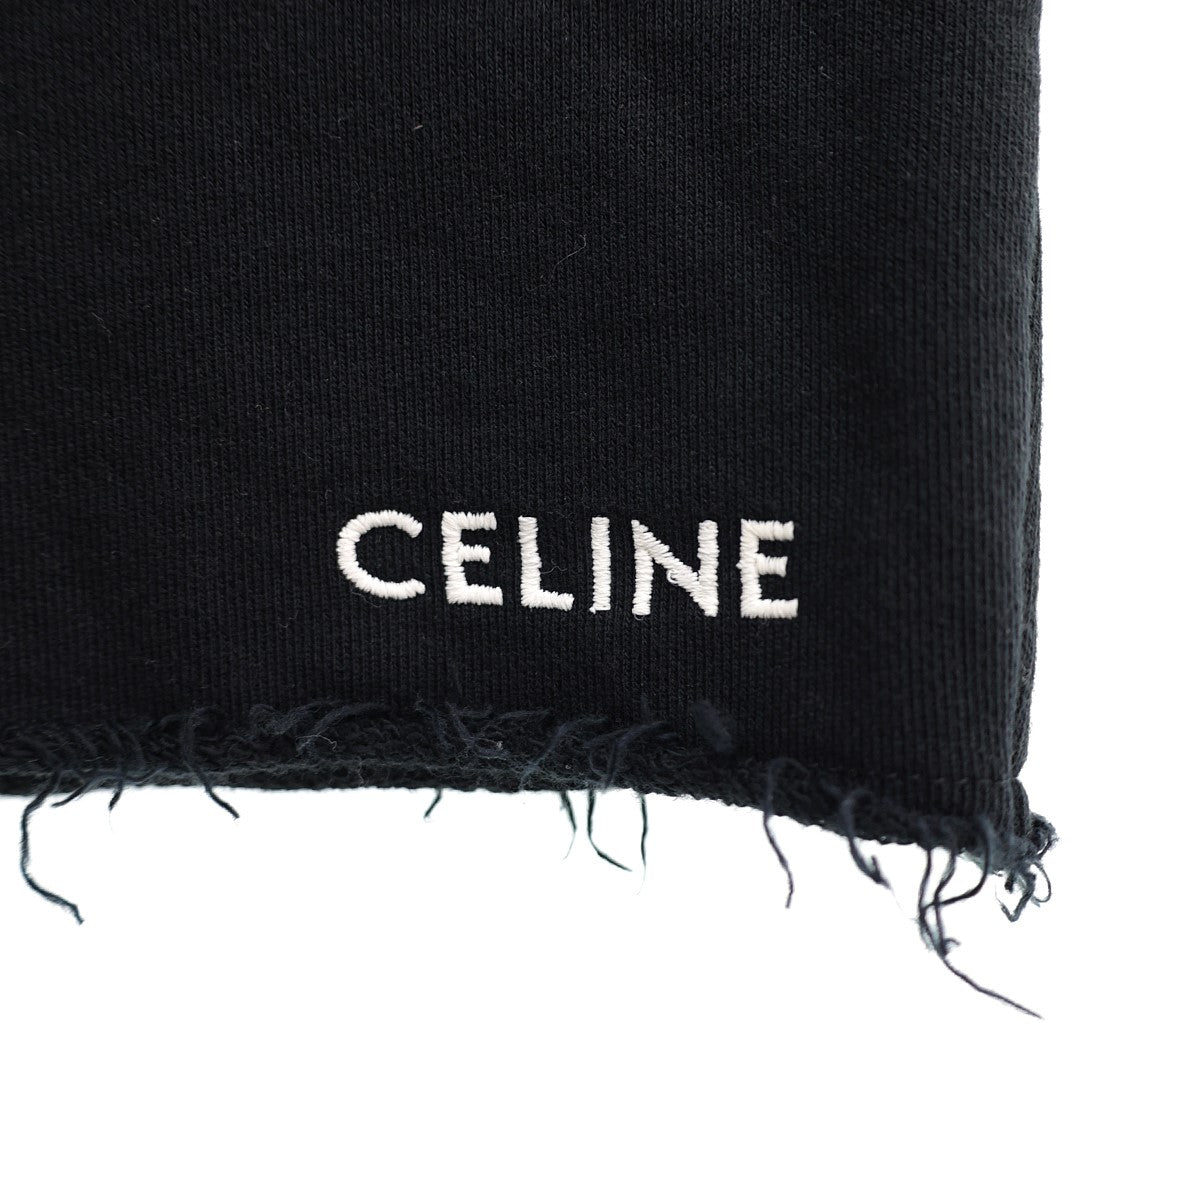 CELINE(セリーヌ) ロゴ刺繍エンブロイダリースウェットショートパンツ ...